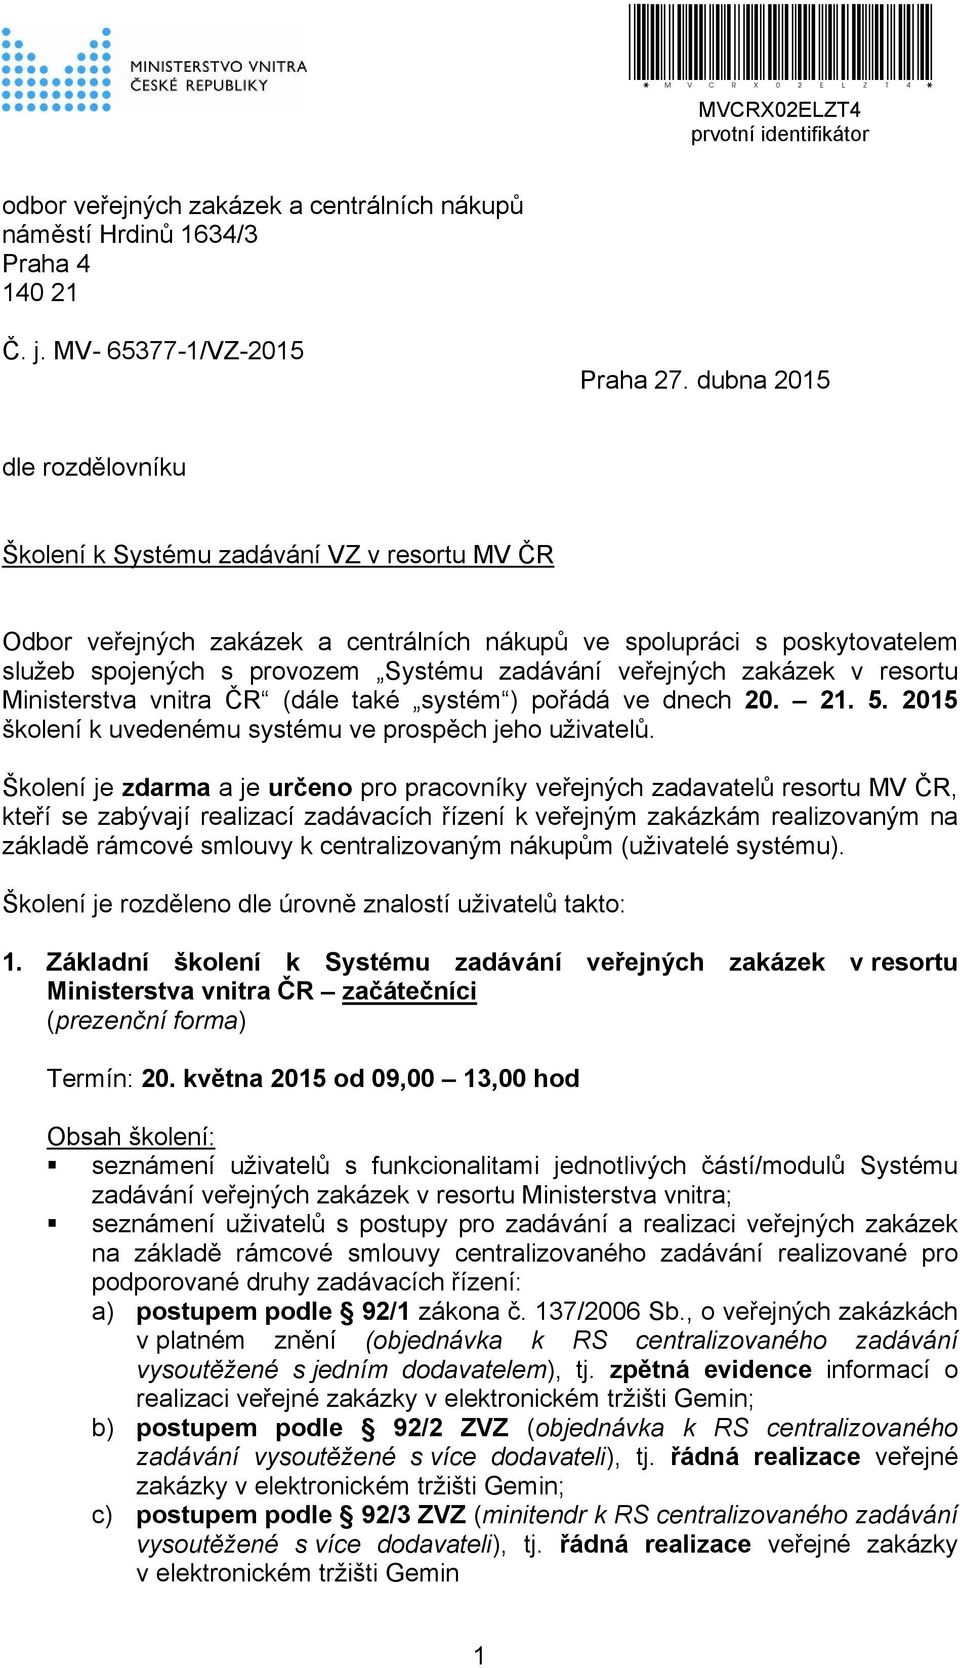 veřejných zakázek v resortu Ministerstva vnitra ČR (dále také systém ) pořádá ve dnech 20. 21. 5. 2015 školení k uvedenému systému ve prospěch jeho uživatelů.